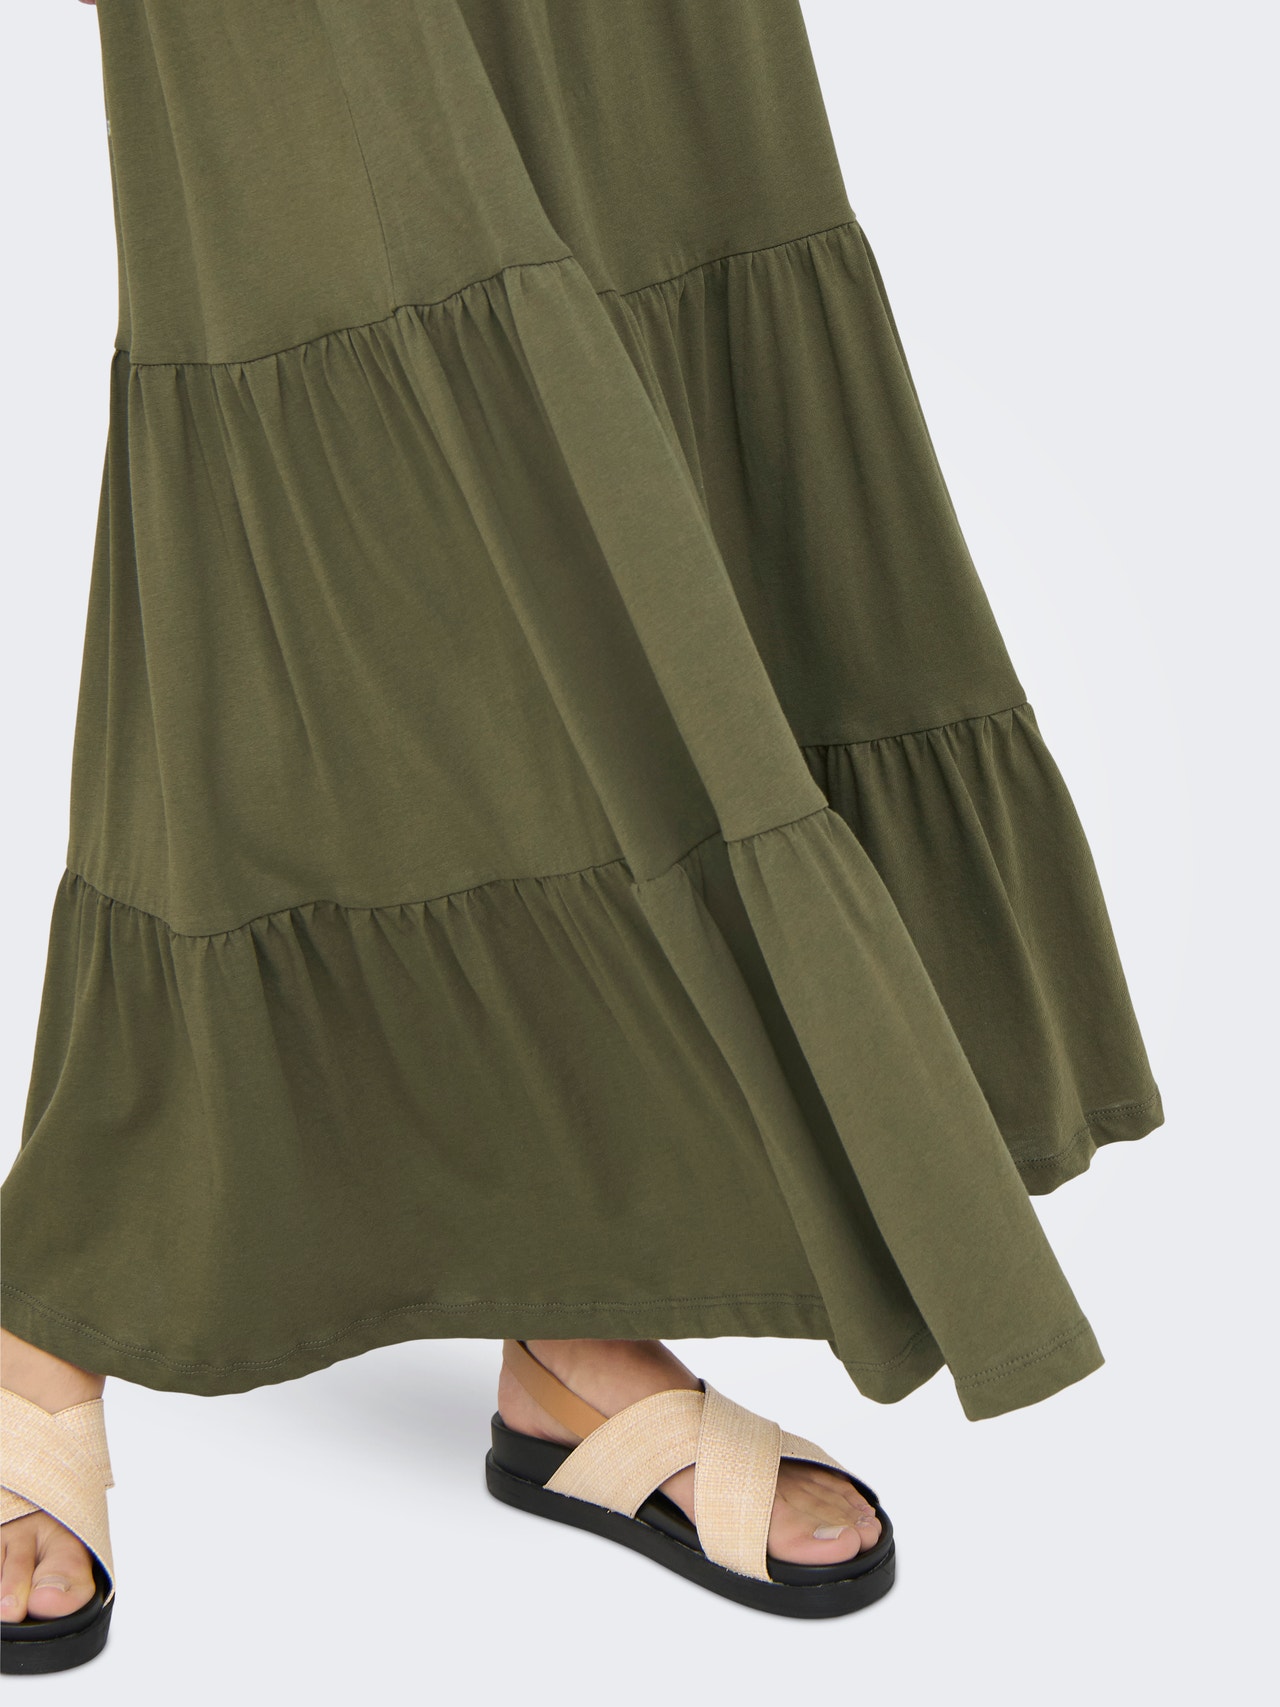 ONLY Maxi skirt with frills -Kalamata - 15226994